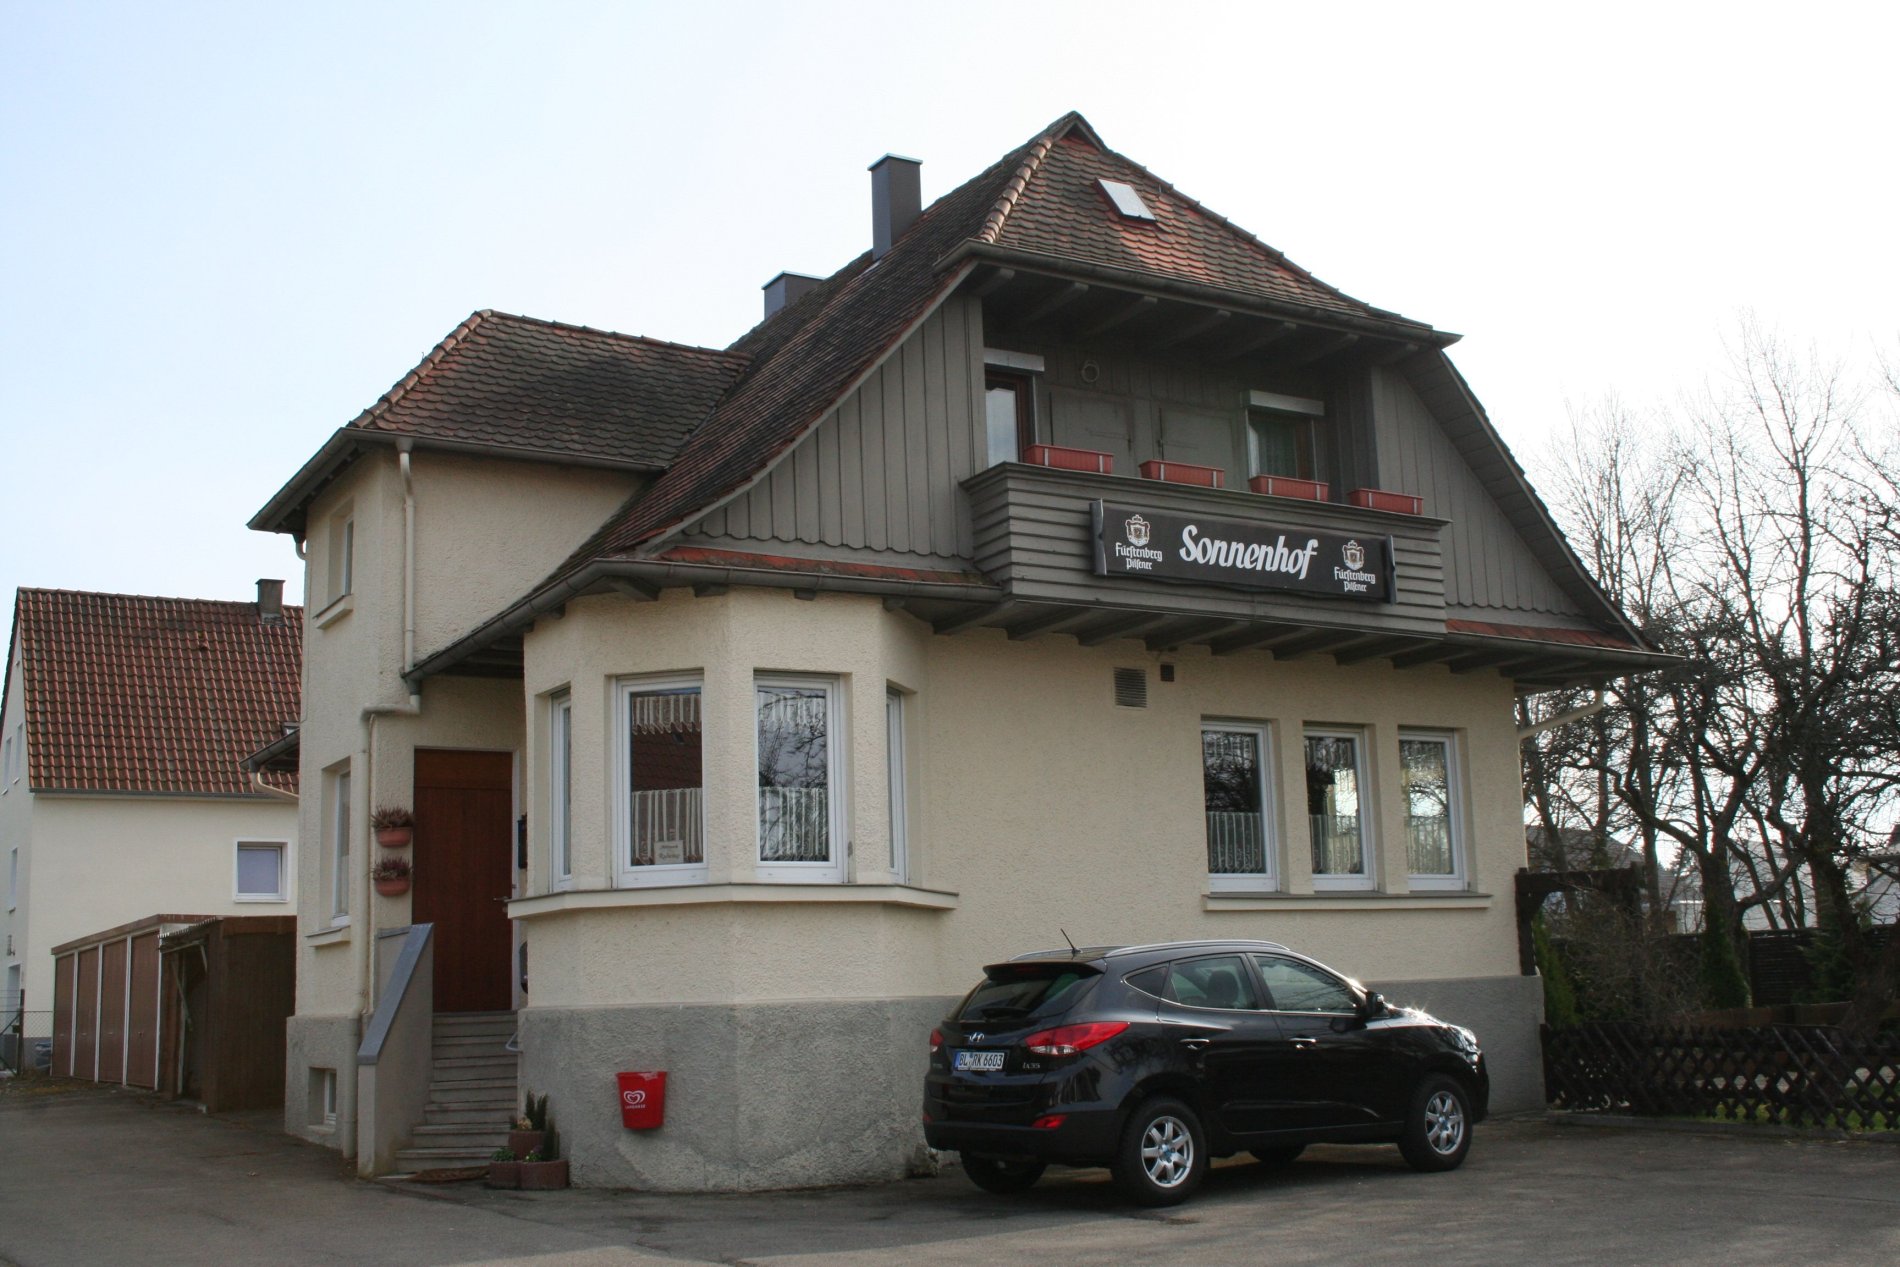 Gastronomie in Albstadt: Gasthaus Sonnenhof in Albstadt-Tailfingen